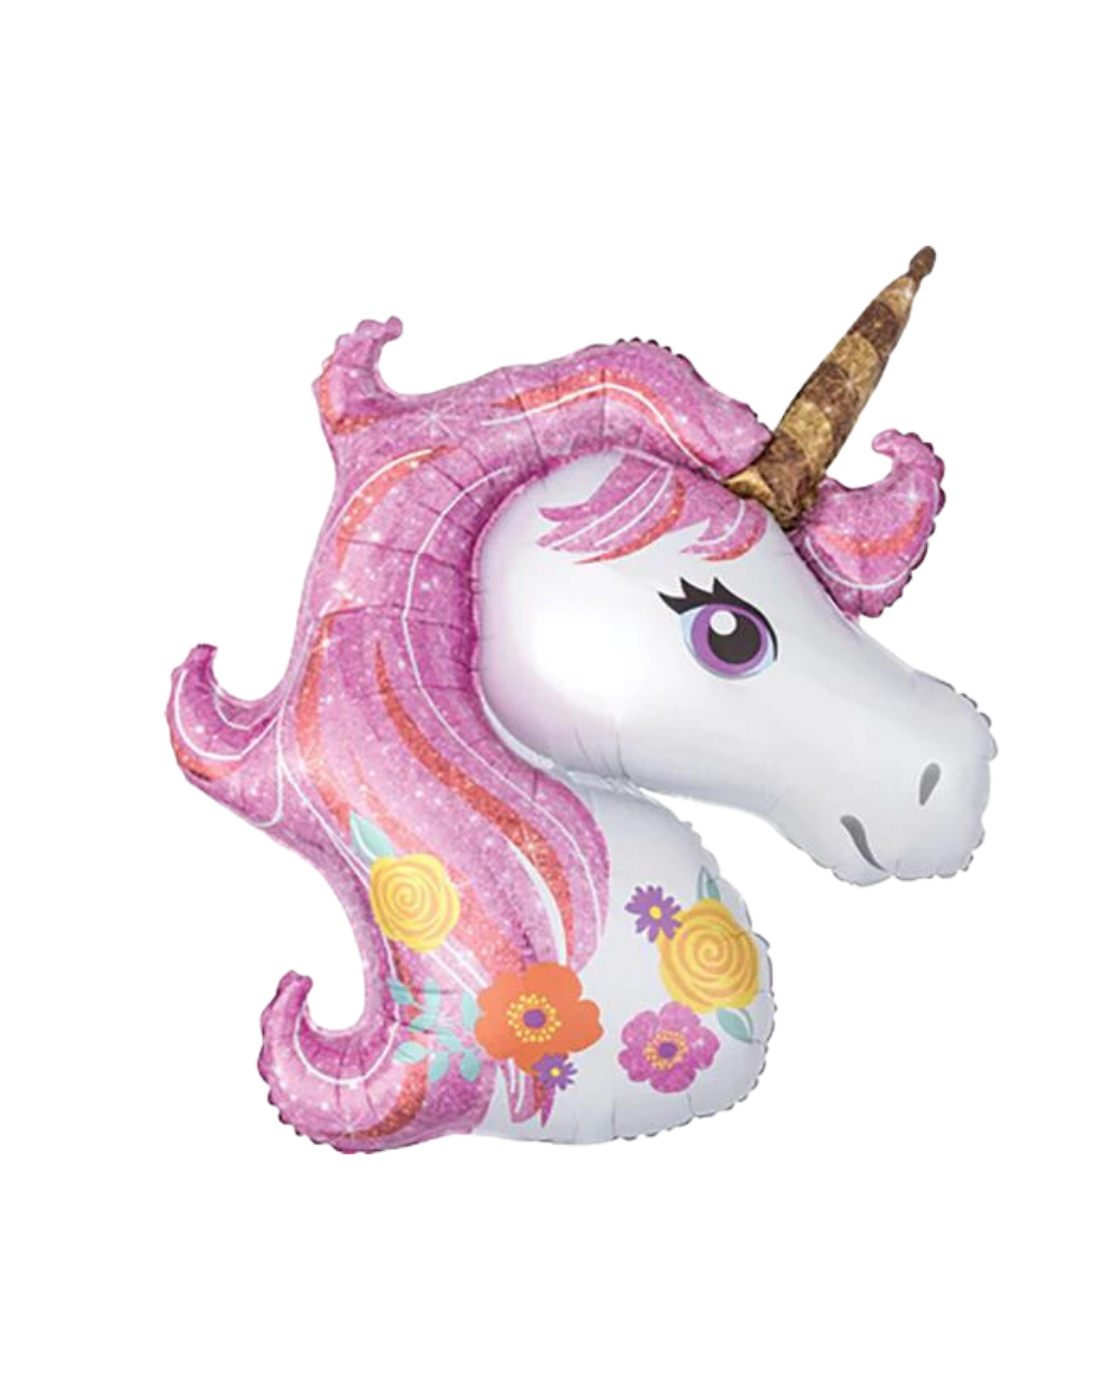 Enchanted Unicorn 33 inches